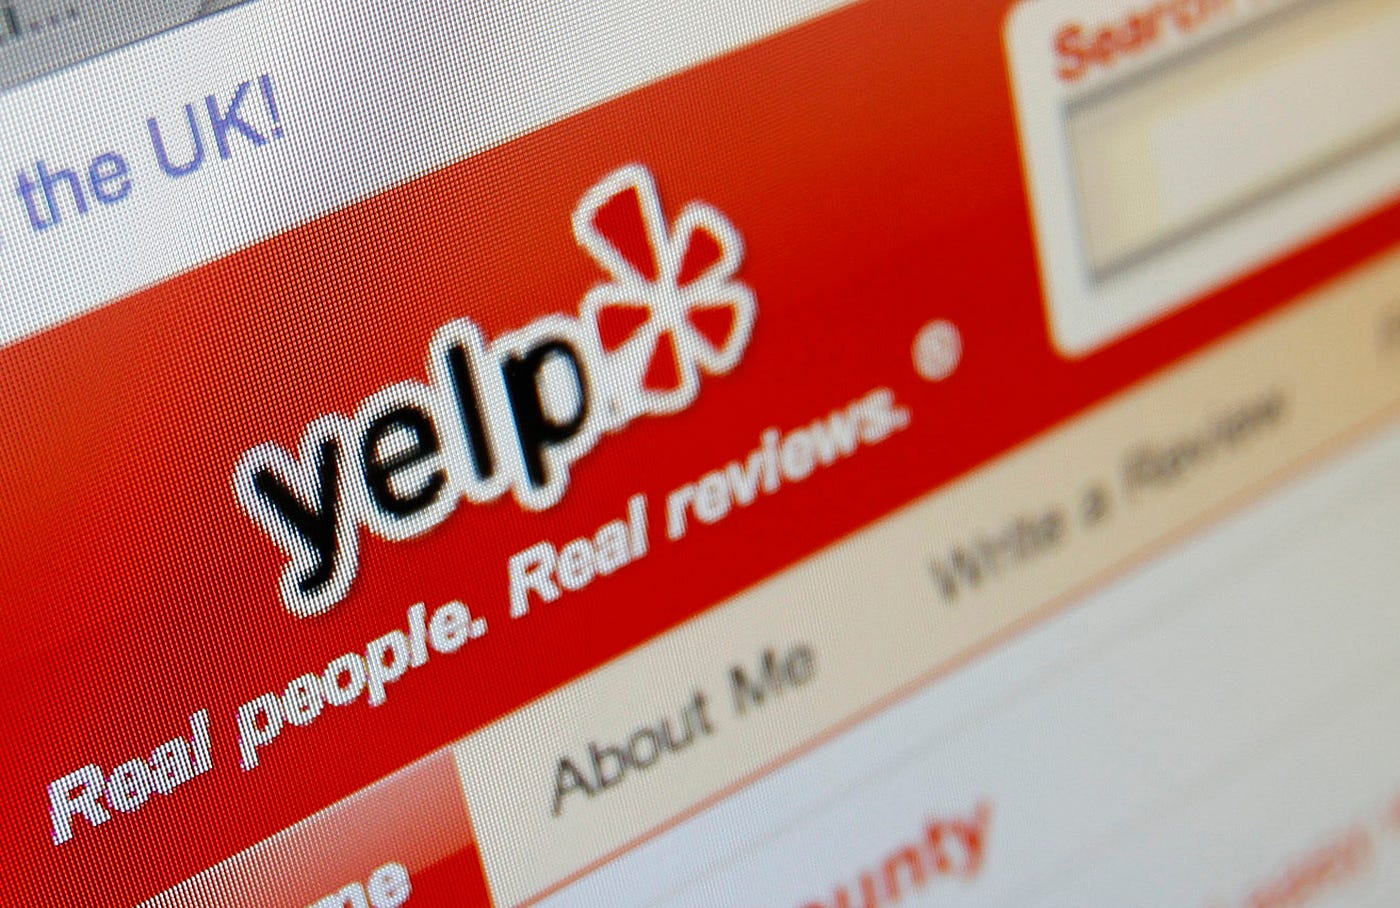 La plataforma Yelp puso en manos de los usuarios la actividad de calificación de restaurantes que antes era desarrollada por empleados de las guías gastronómicas.